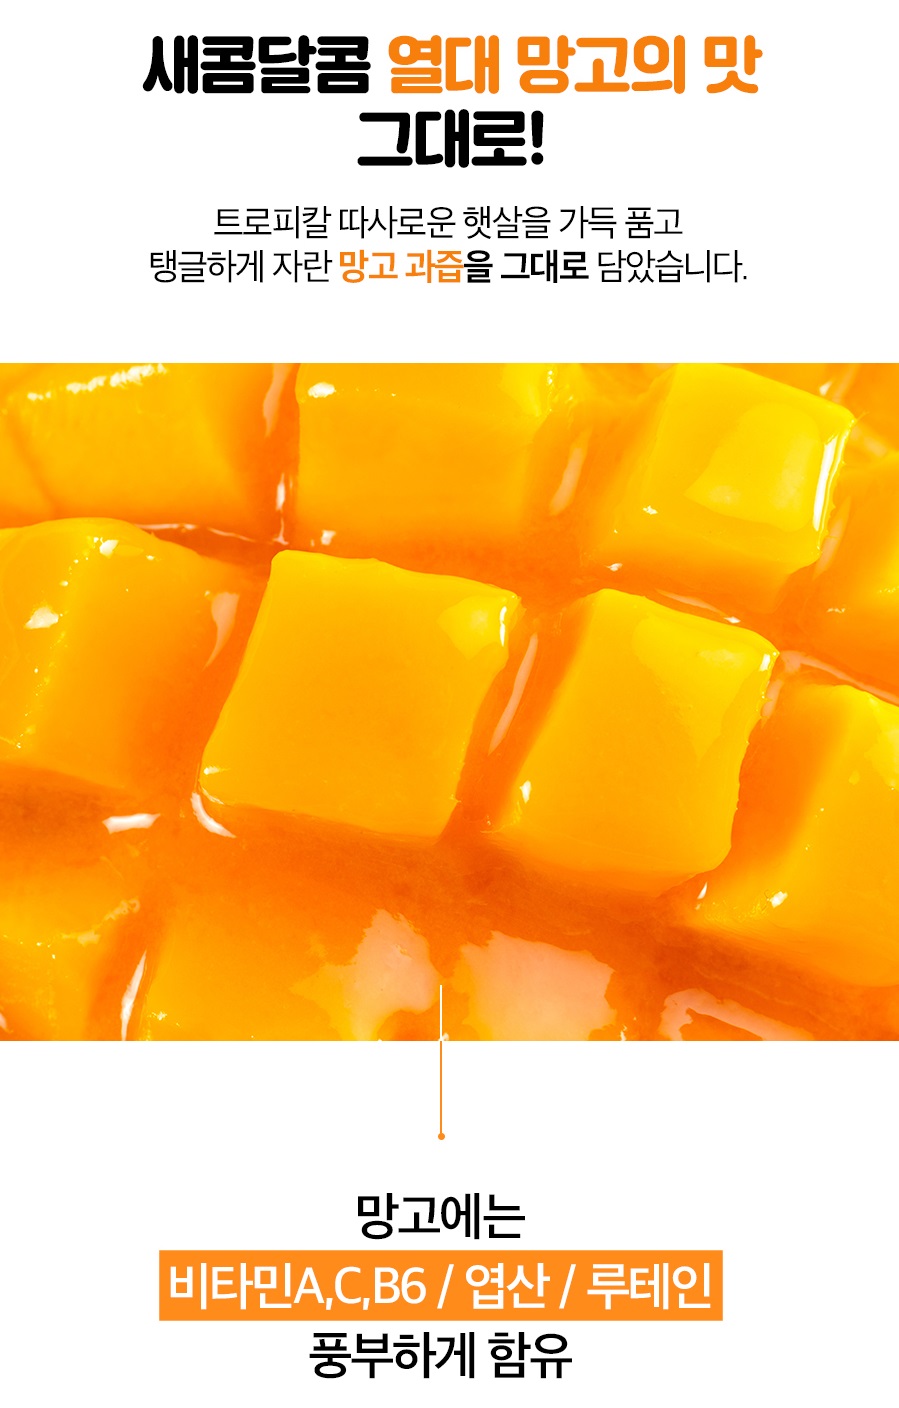 Thạch nghệ vị xoài Nano Curcumin Jelly Hàn Quốc 1 hộp 32 gói 20g